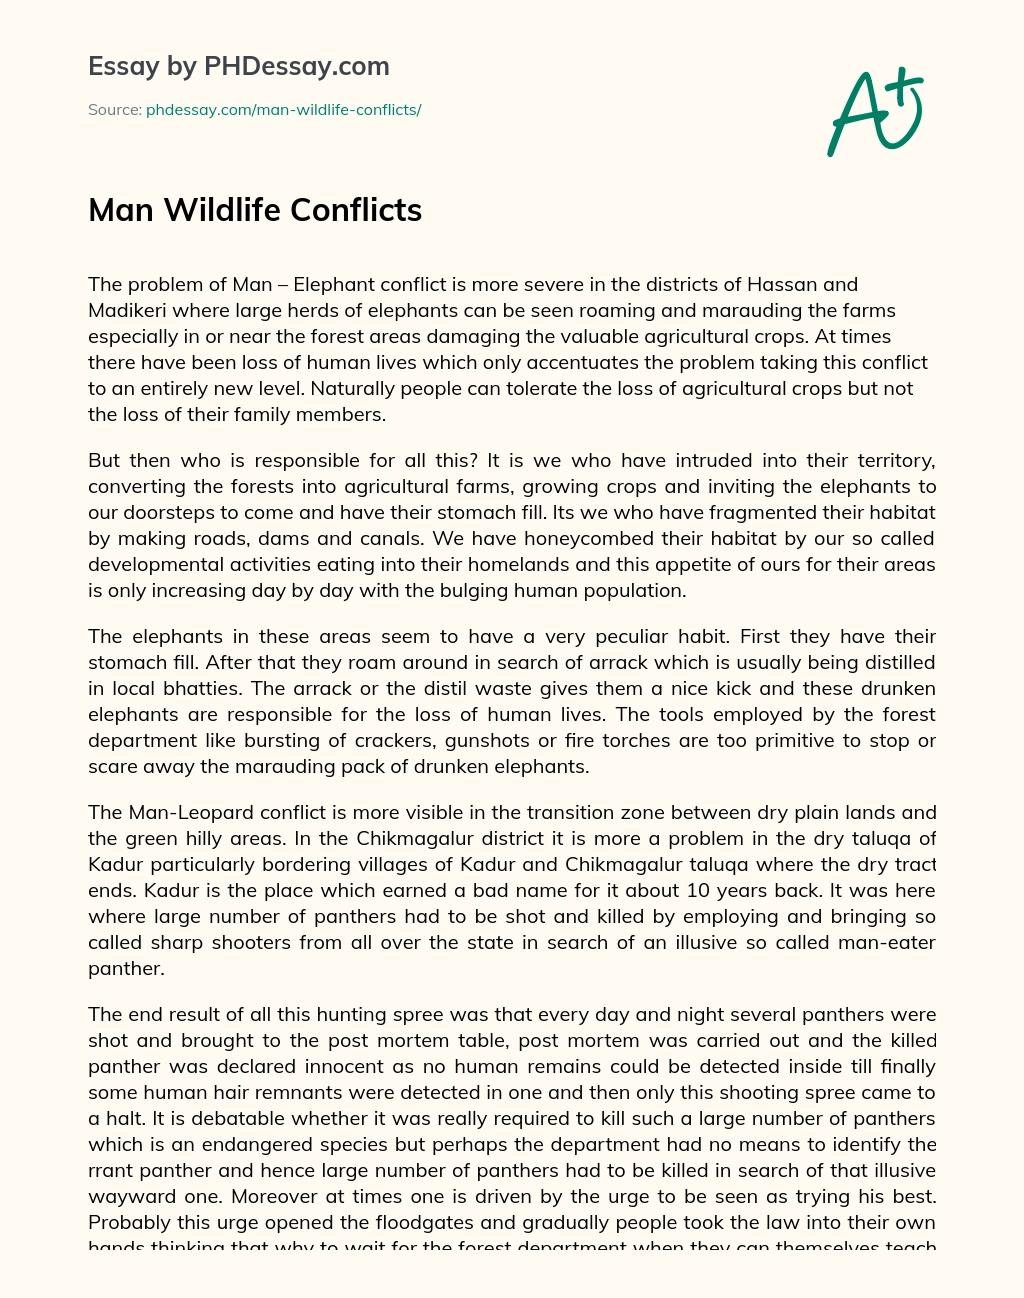 Man Wildlife Conflicts essay